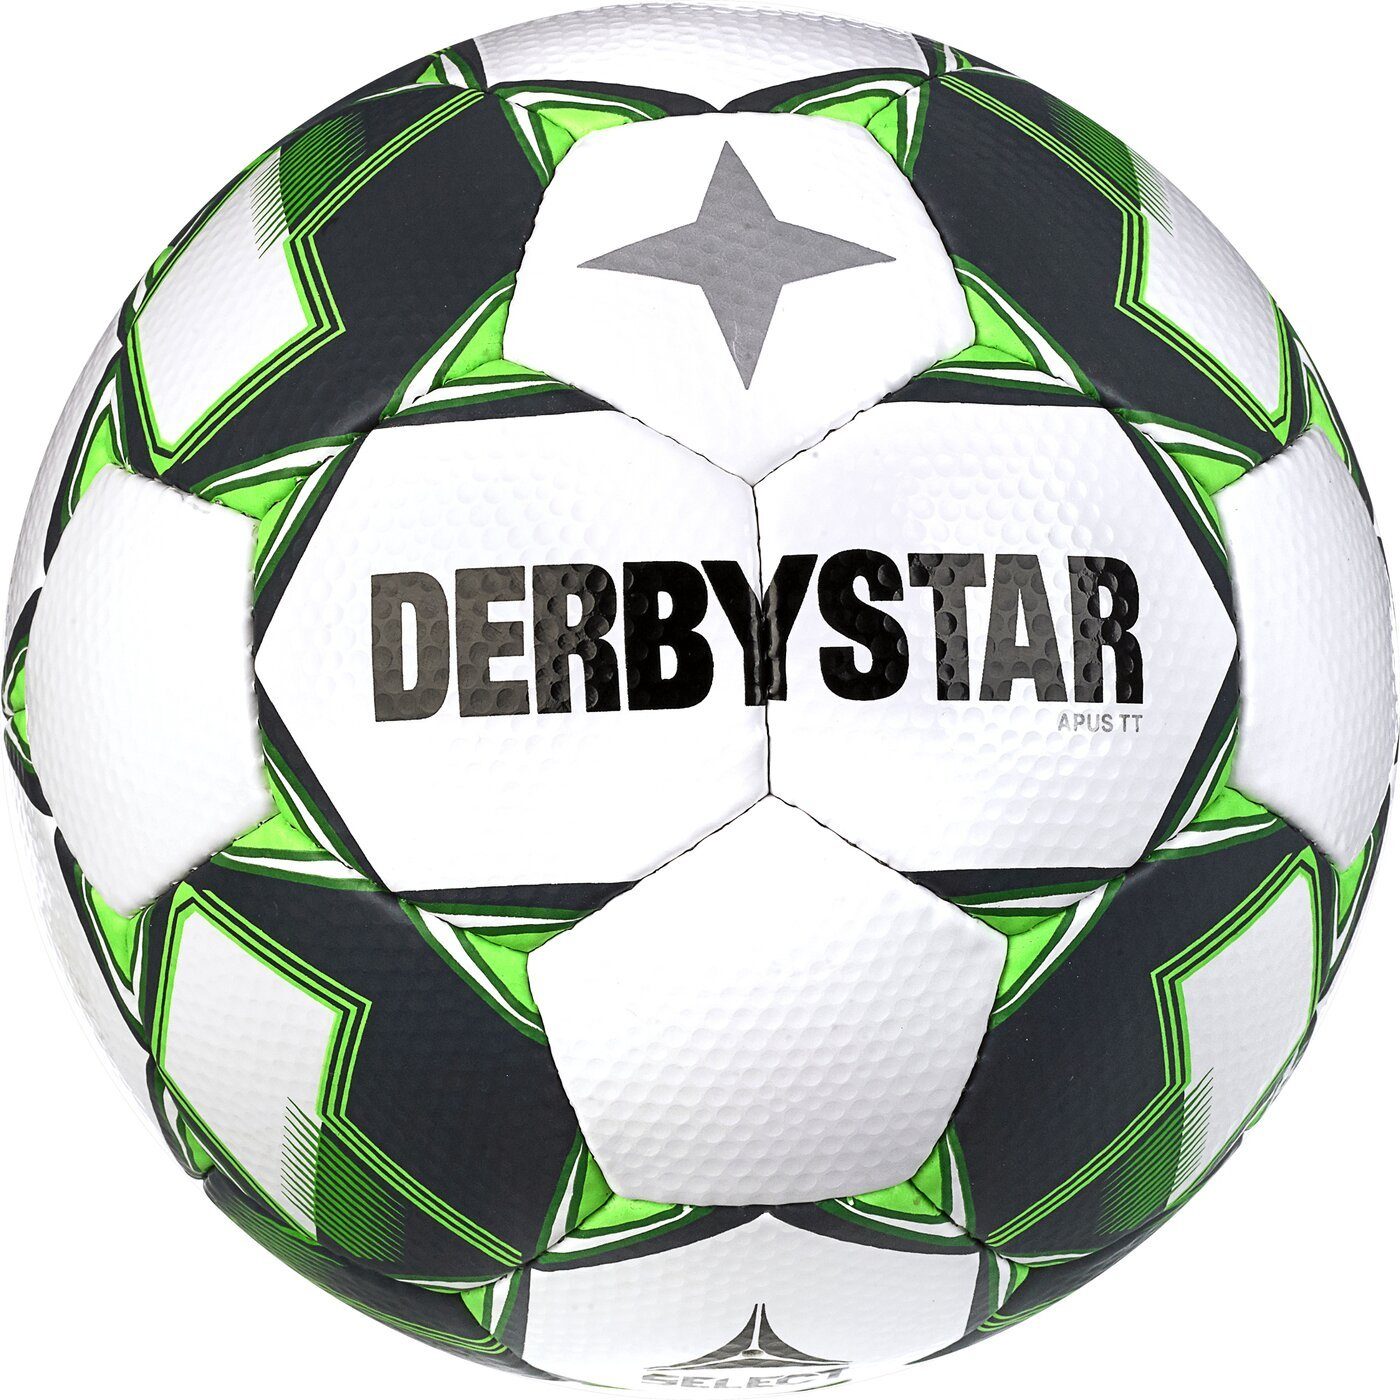 Derbystar Fußball Apus TT v23 WEISS GRÜN | Fußbälle